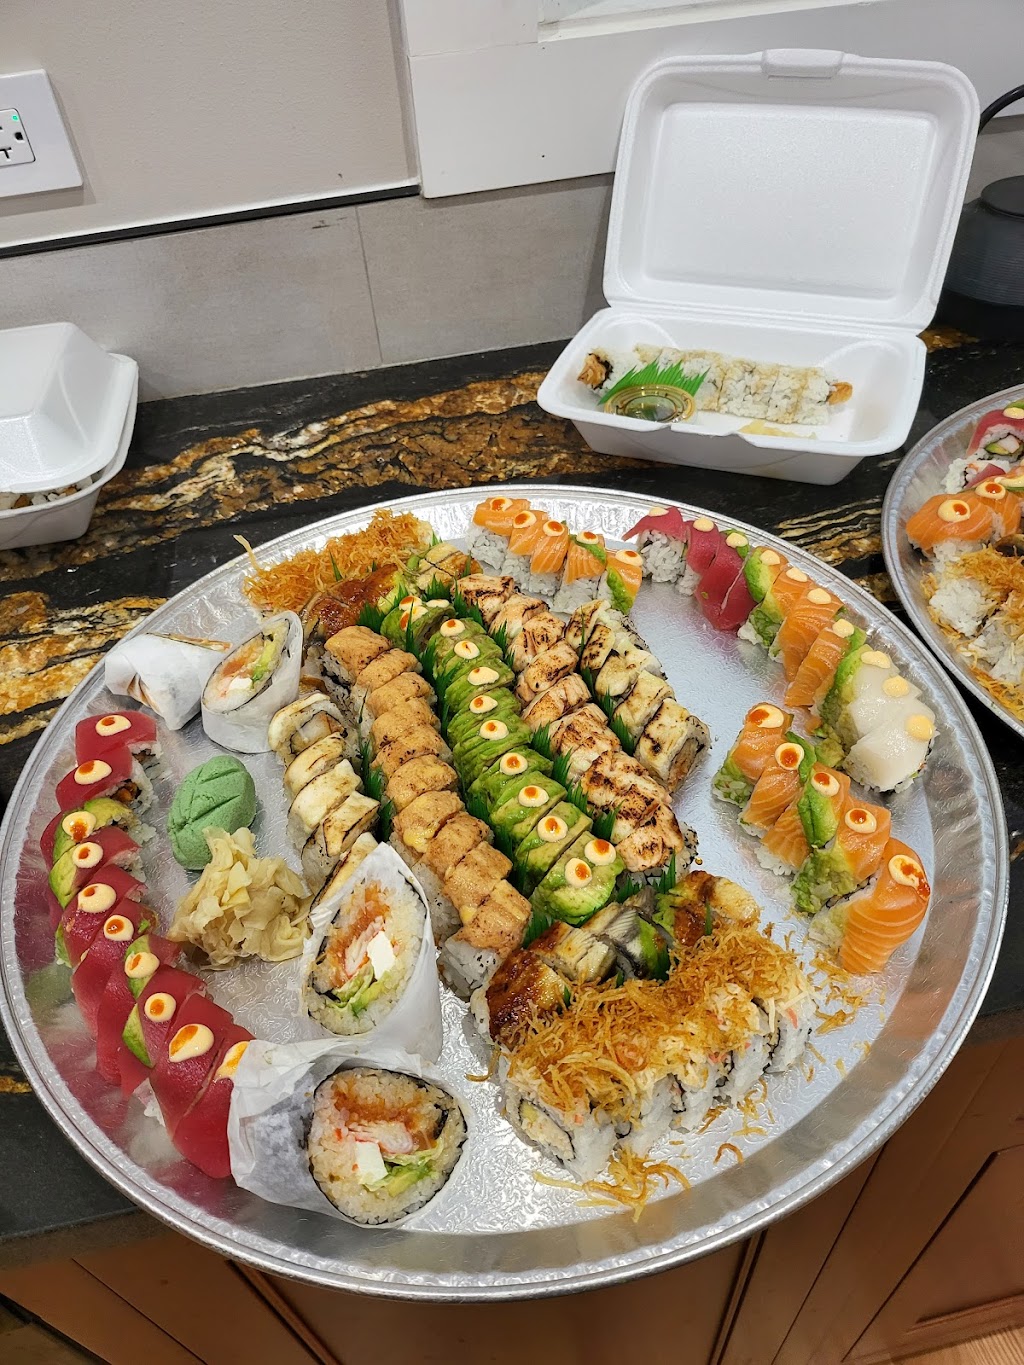 Sushi Yoru | 523 Rand Rd, Lake Zurich, IL 60047, USA | Phone: (224) 677-5353